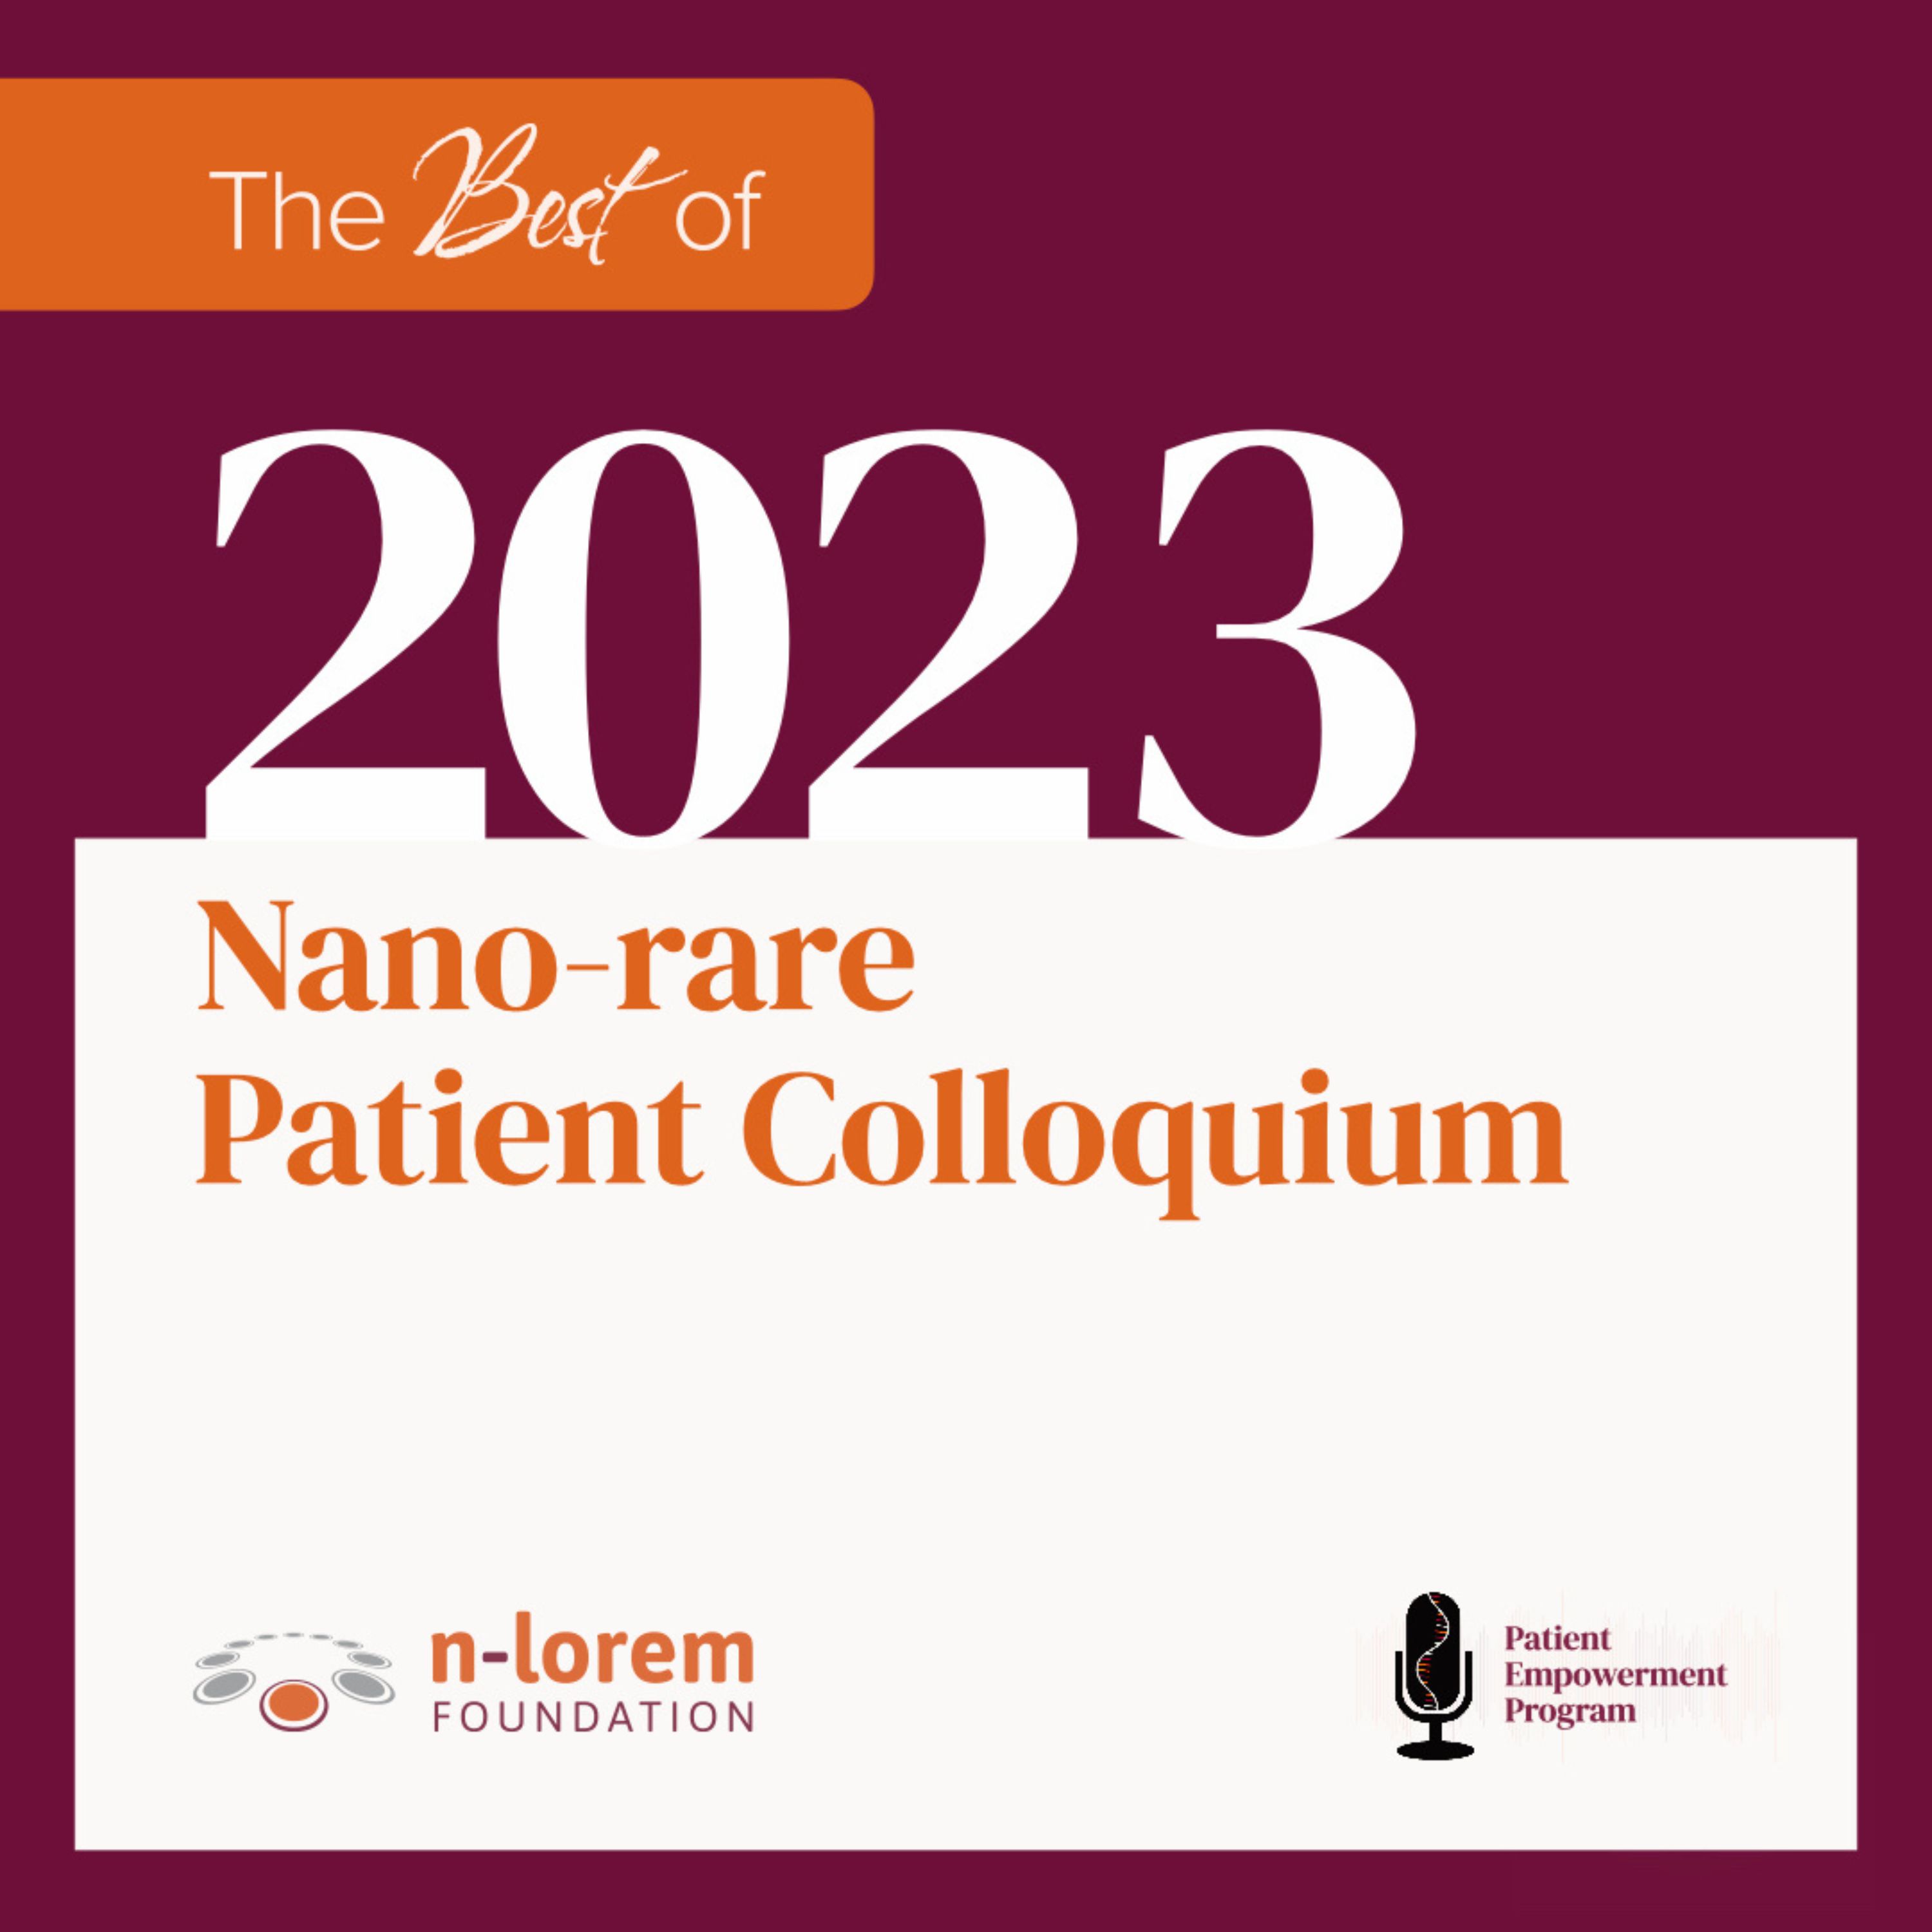 Best of the 2023 Nano-rare Patient Colloquium